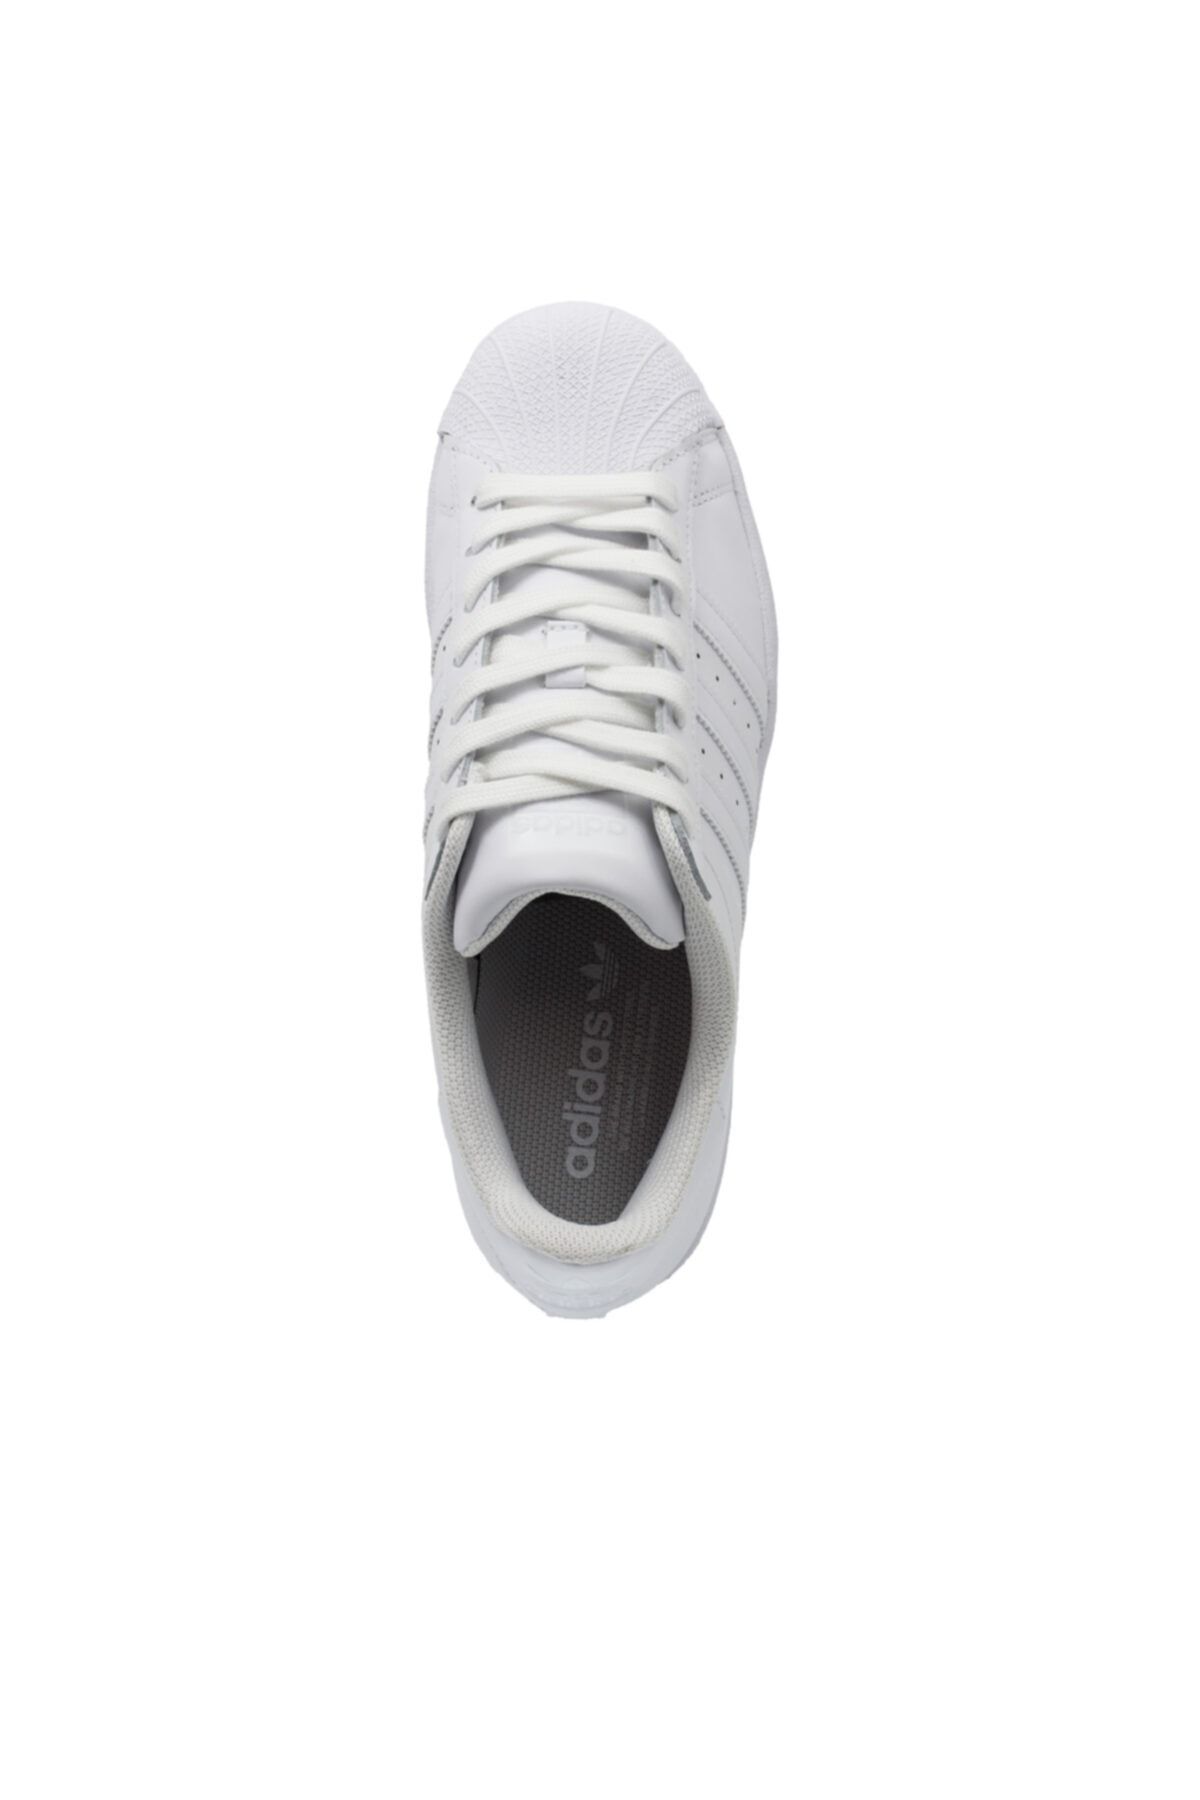 Adidas Co Erkek Ayakkabı Eg4960 Fiyatı, Yorumları - Trendyol